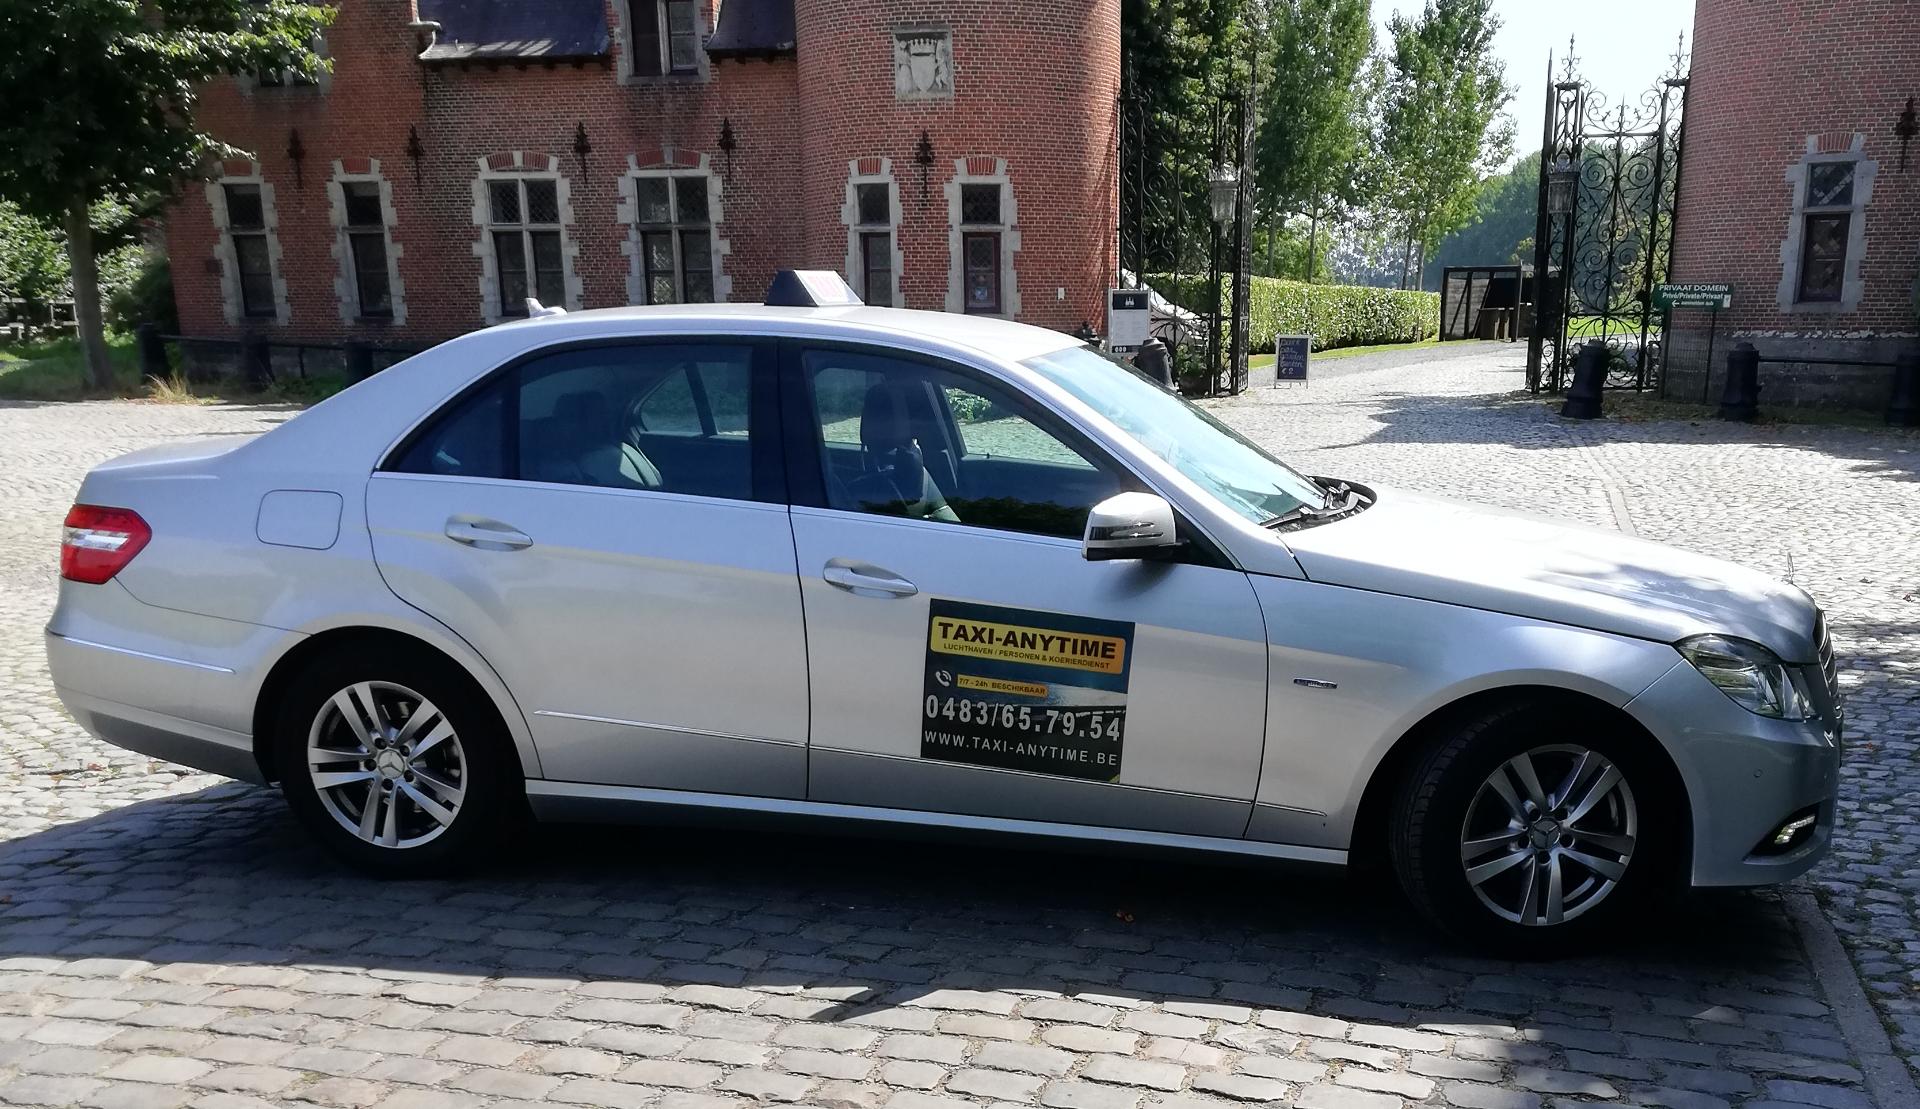 taxibedrijven Uitkerke Taxi Anytime